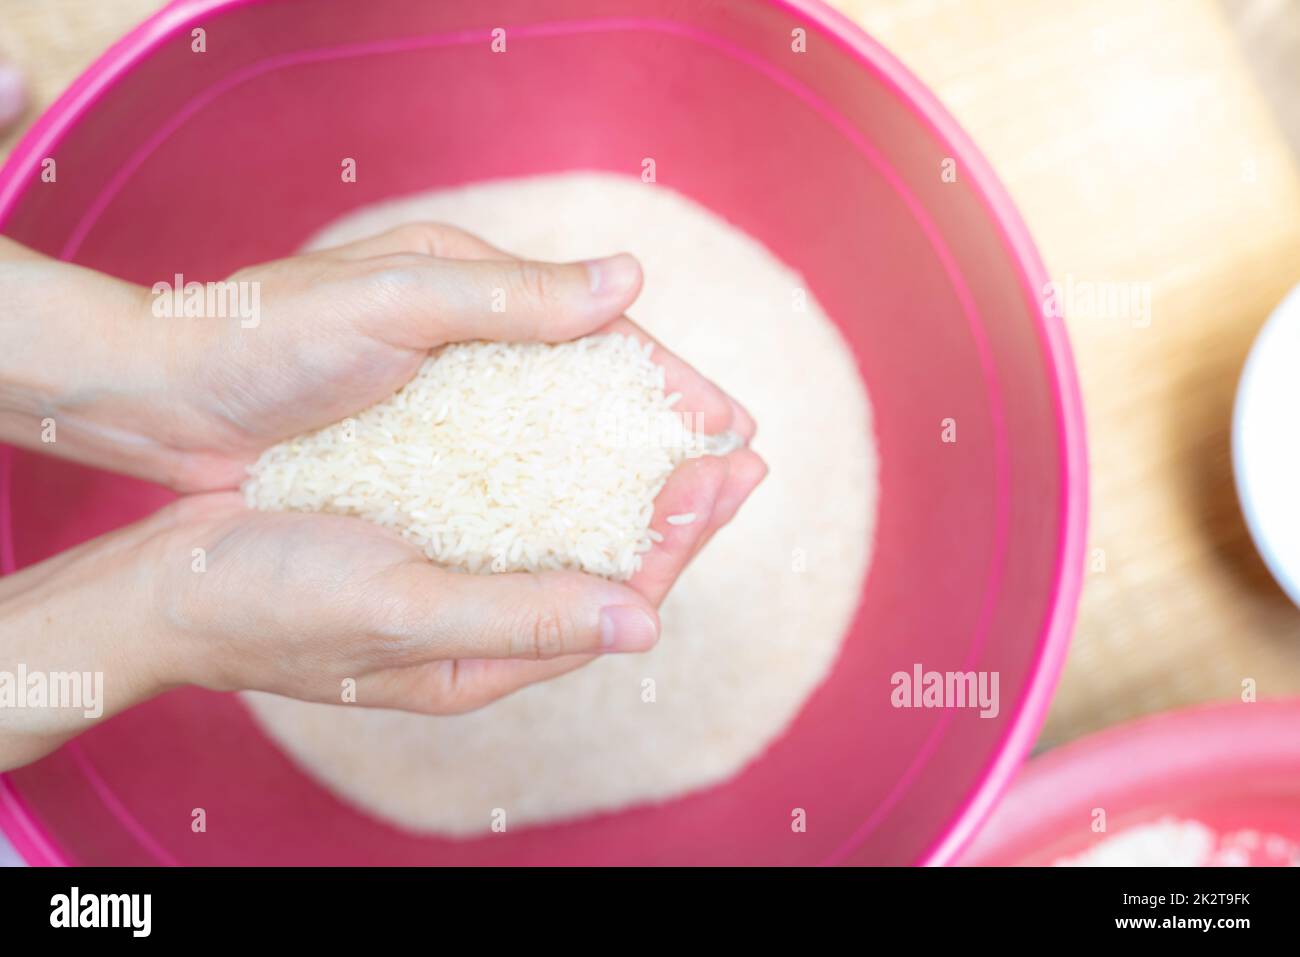 Vista superior de la mano mujer sosteniendo el arroz sobre el tazón de fuente de plástico rojo. Crisis alimentaria mundial. Arroz seco crudo. Arroz blanco blanqueado sin cocinar. Zakat y el concepto de caridad. Cereales orgánicos. El precio del arroz en el mercado mundial. Foto de stock